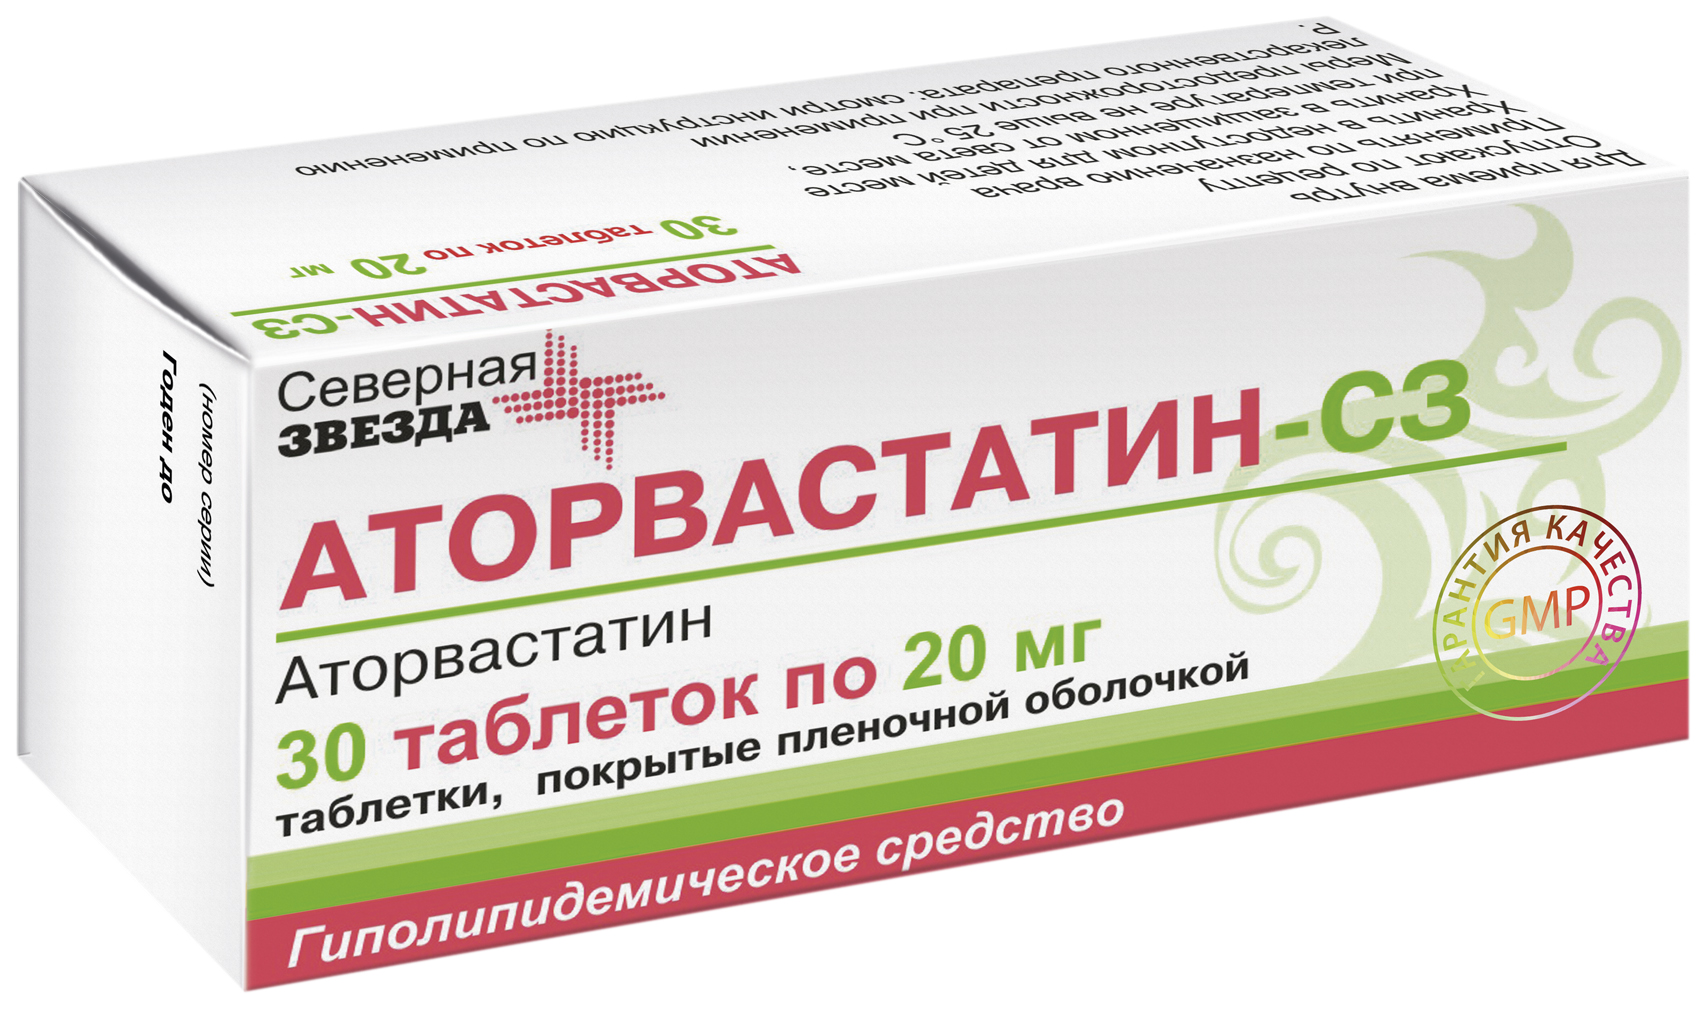 Купить Аторвастатин-СЗ таблетки 20 мг 30 шт., Северная Звезда